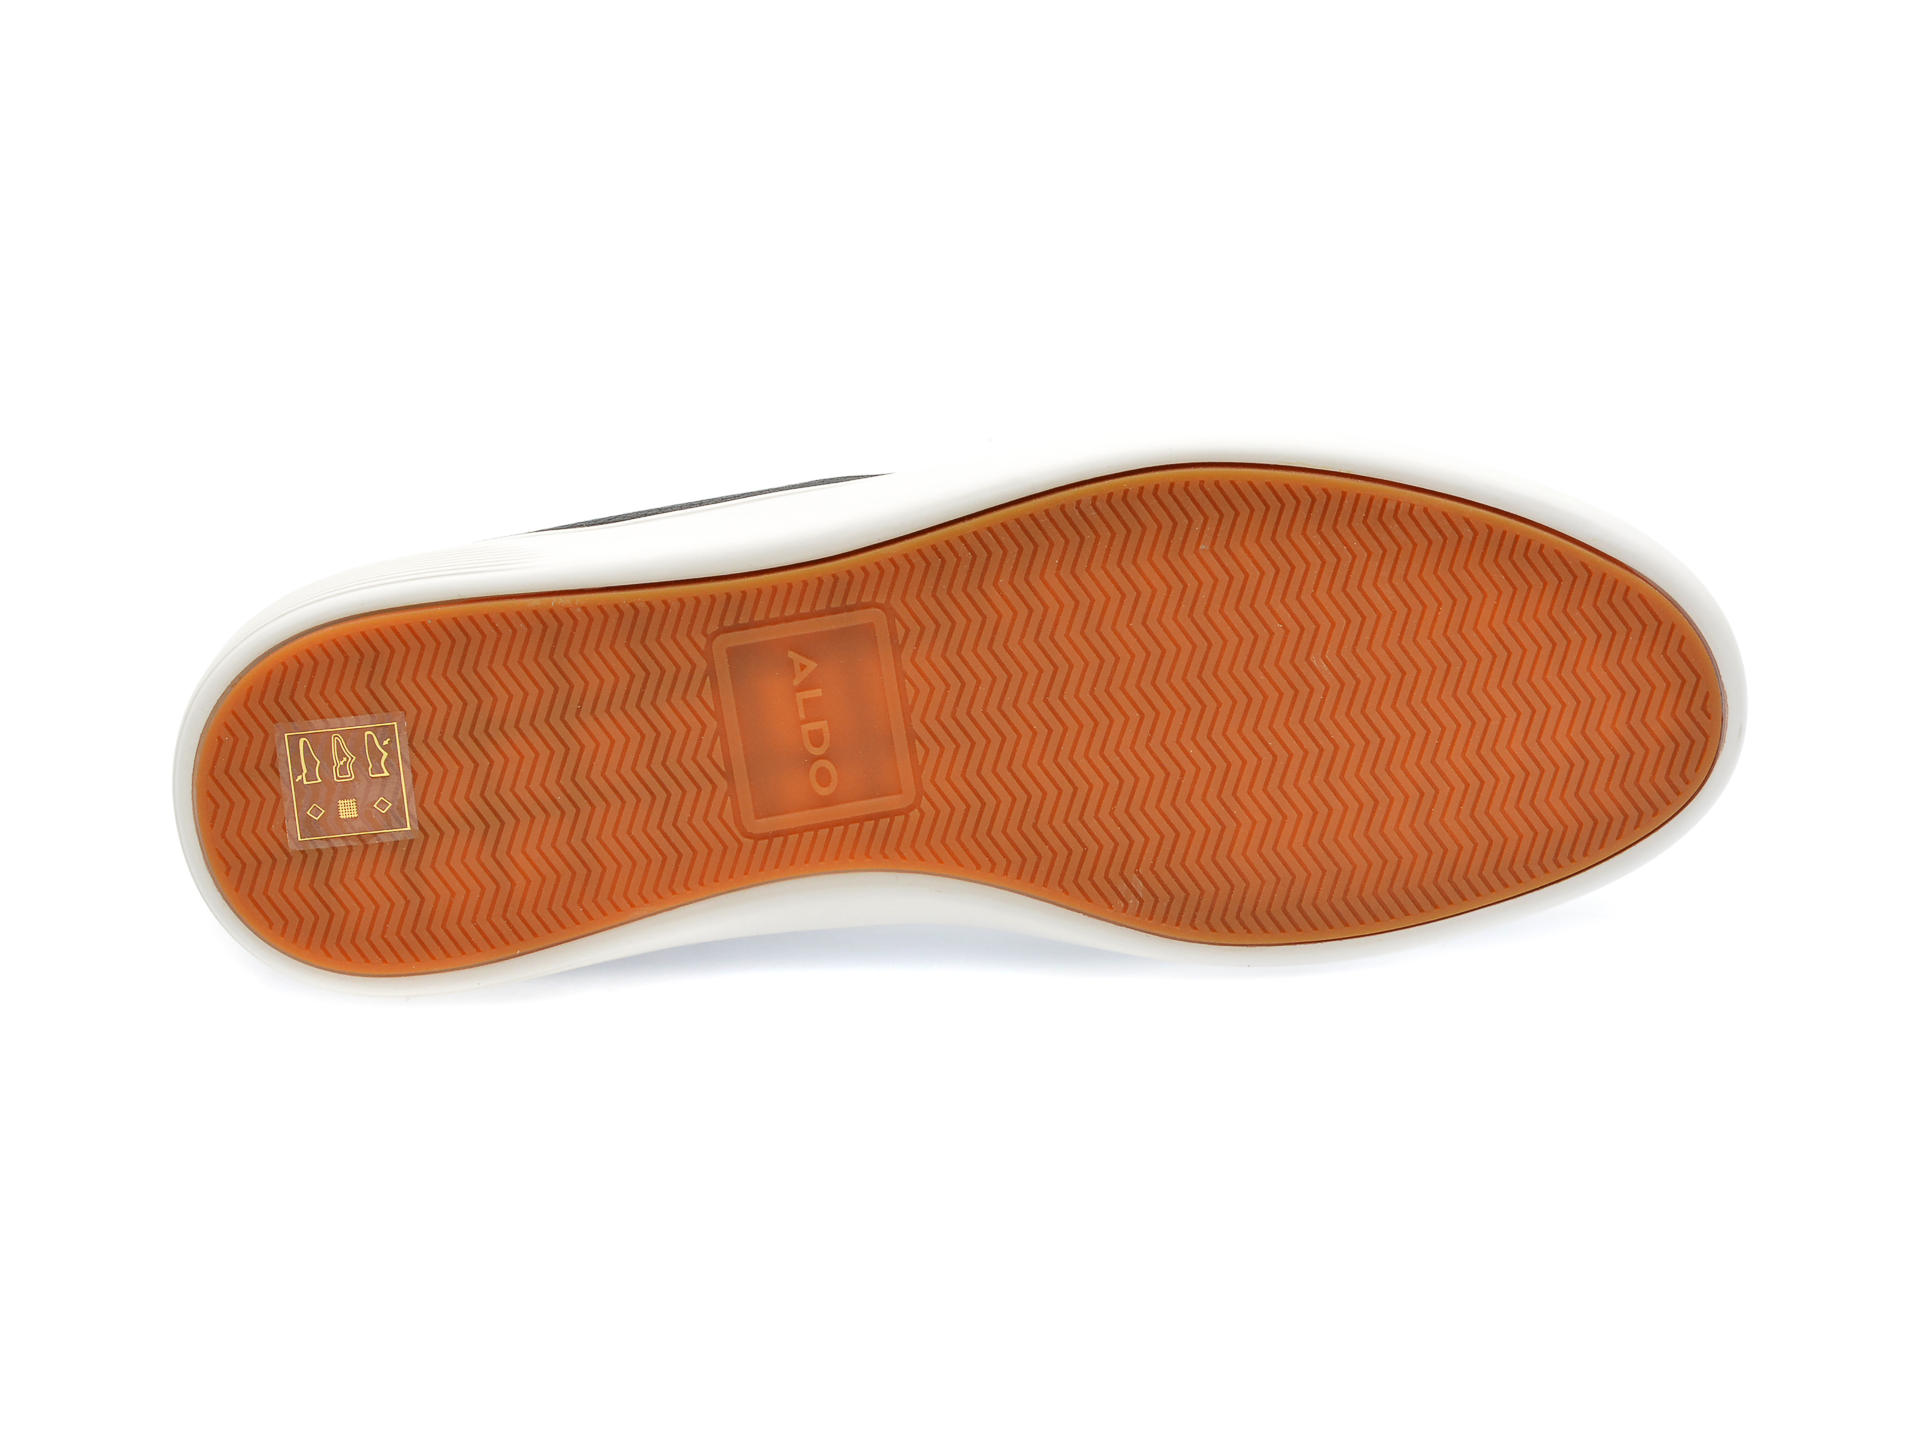 Pantofi ALDO negri, FINESPEC001, din piele ecologica